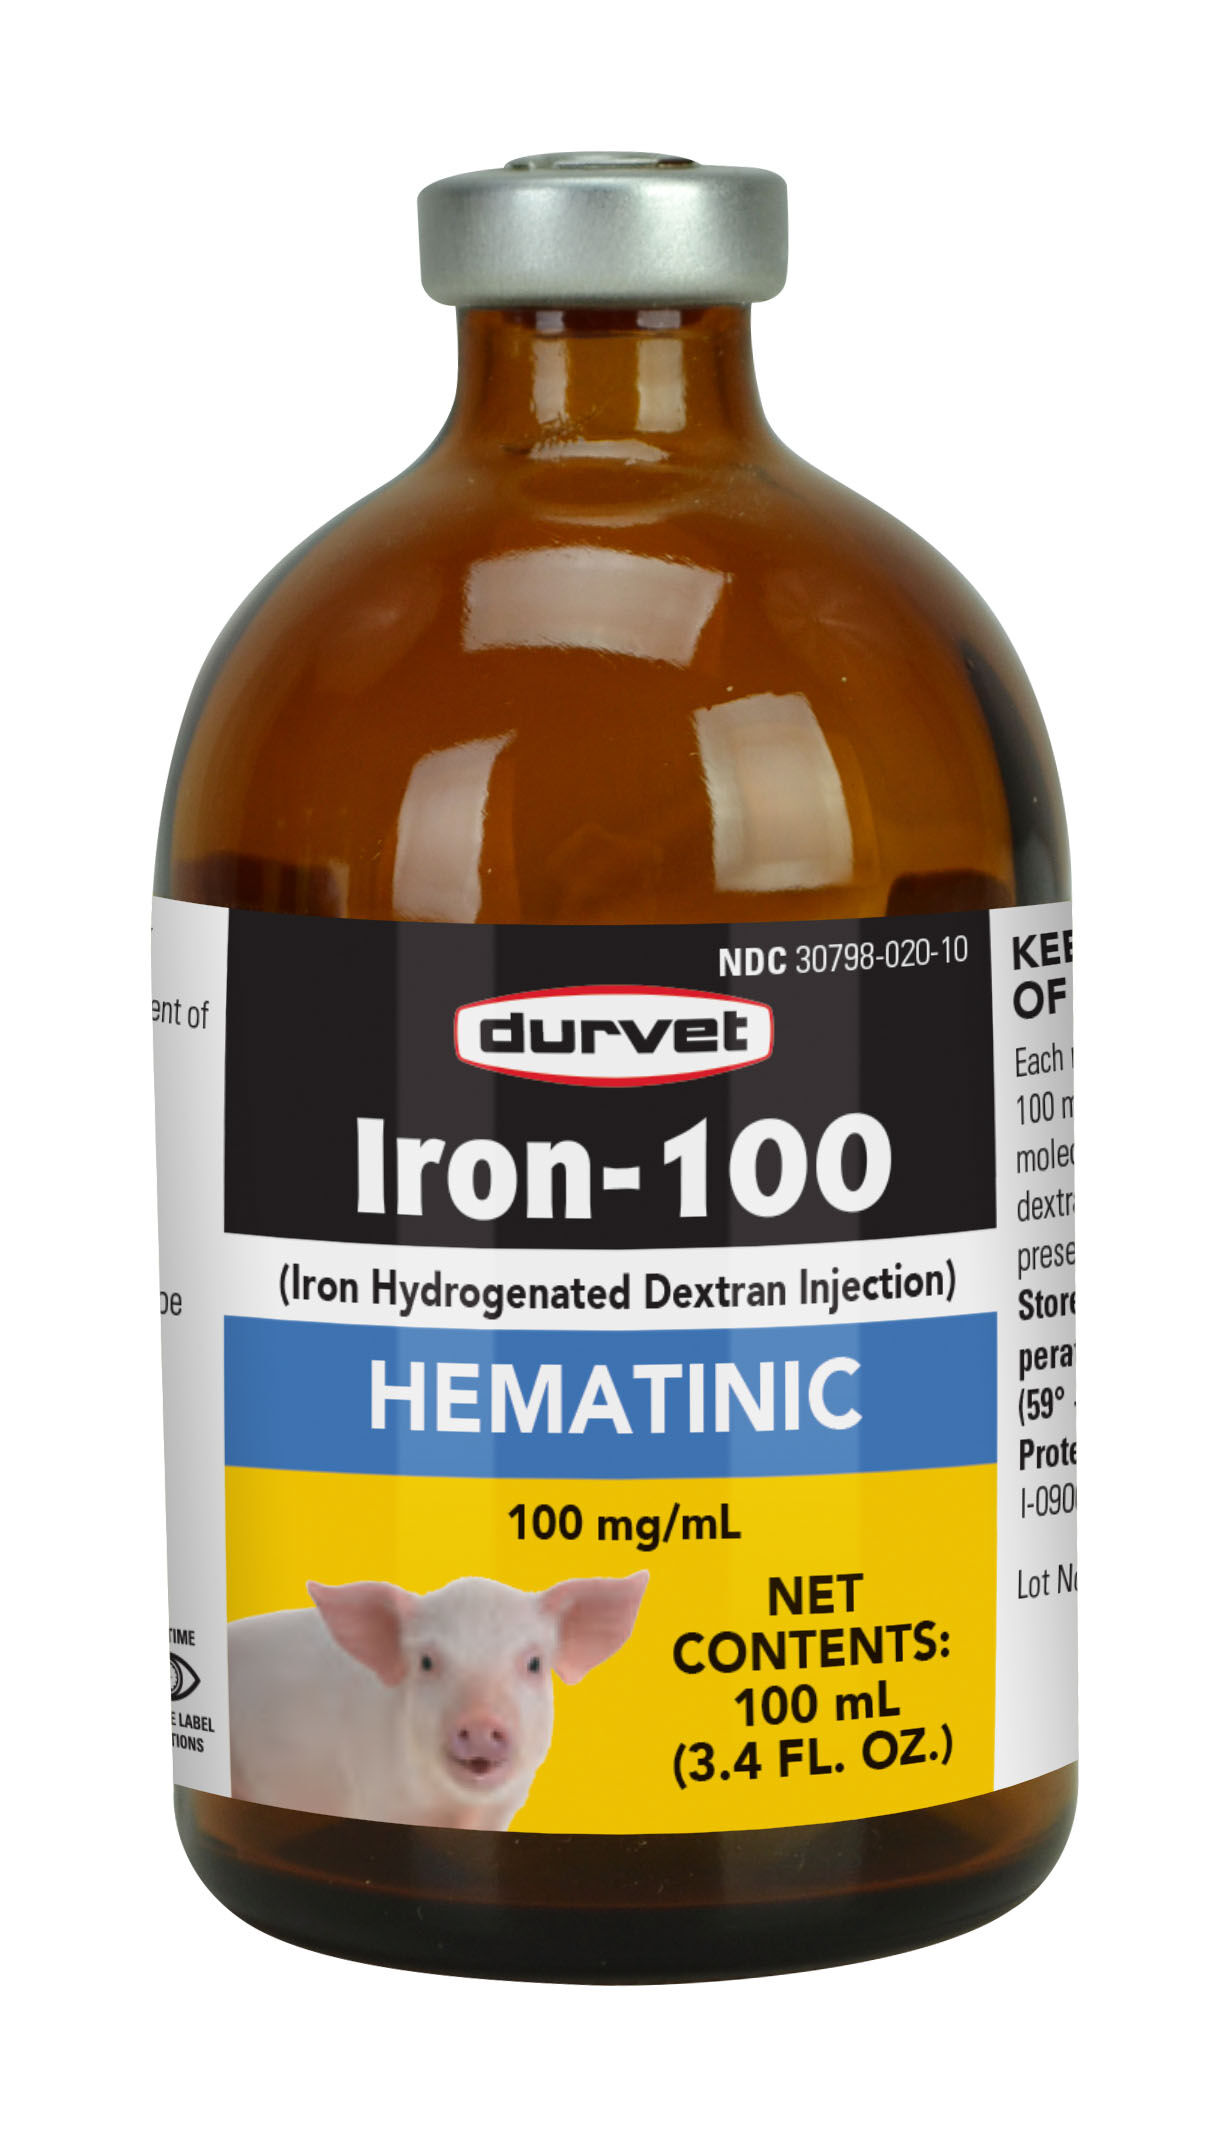 Iron-100